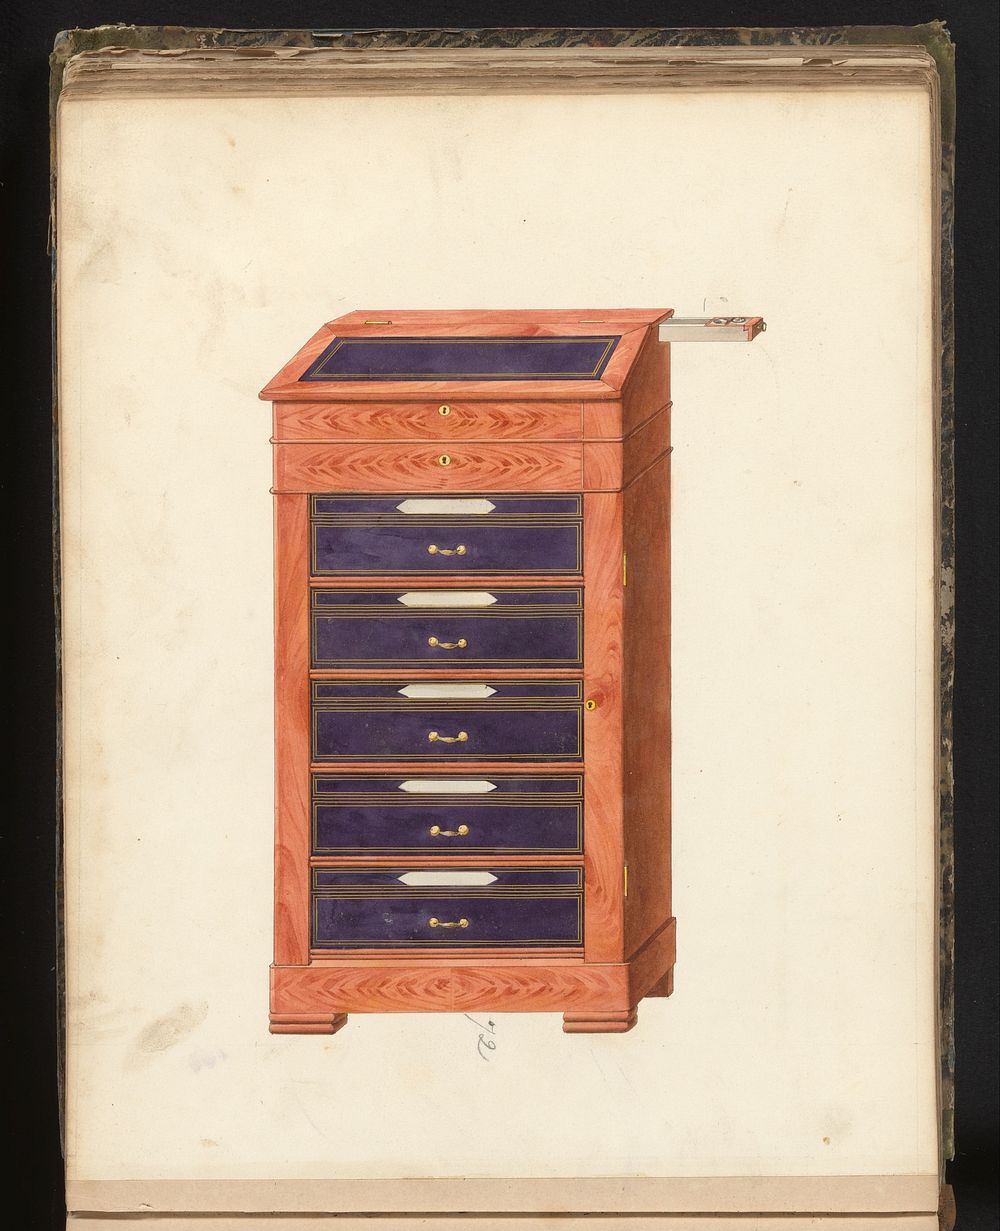 Ontwerp voor een ladekast met vijf lades met lessenaar en uitschuifbaar inktstel (c. 1825 - c. 1839) by anonymous